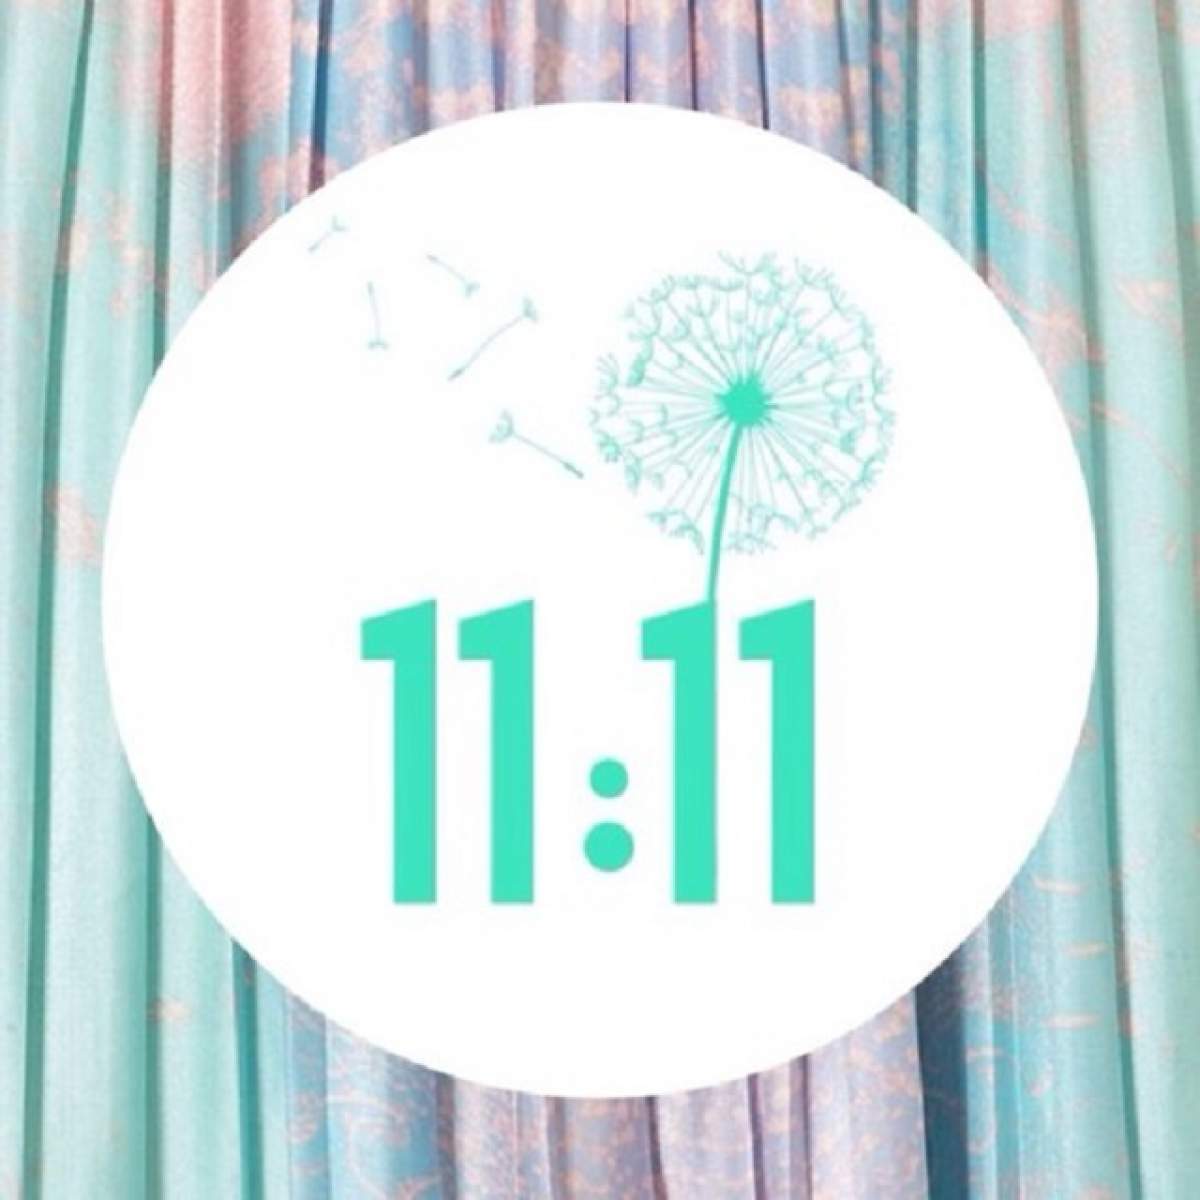 Semnificaţia magică a numărului 11.11. 2015! Ce ţi se întâmplă astăzi şi va avea impact asupra întregii tale vieţi